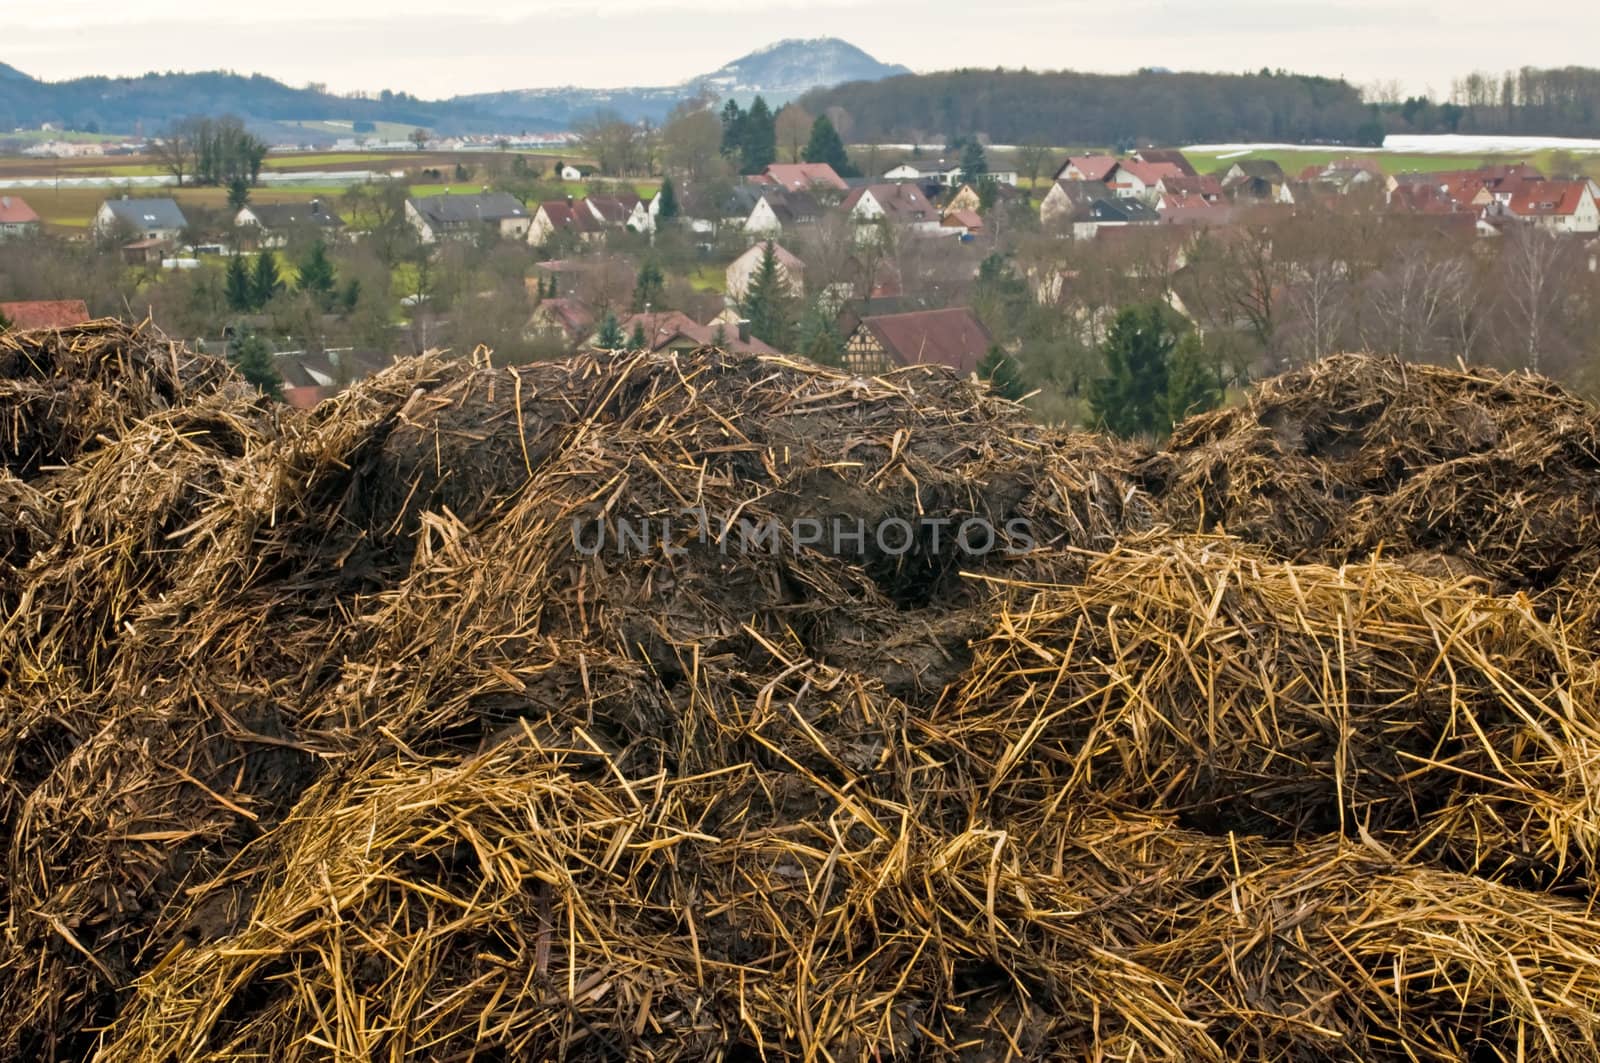 dung hill by Jochen